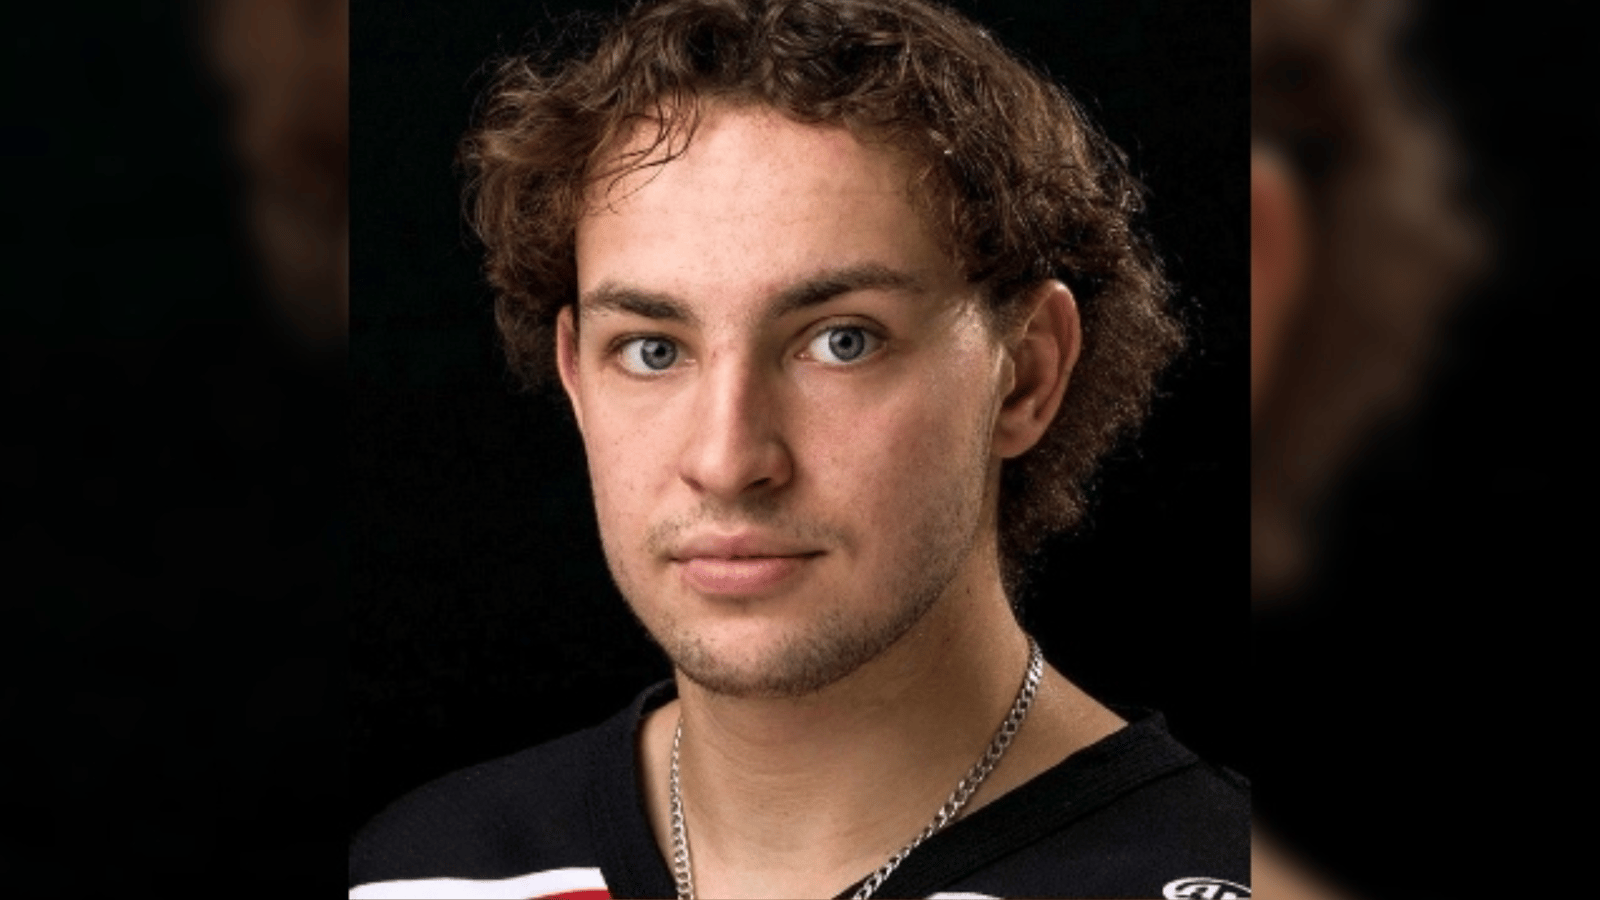 Terrible tragédie pendant un match de hockey junior en Ontario